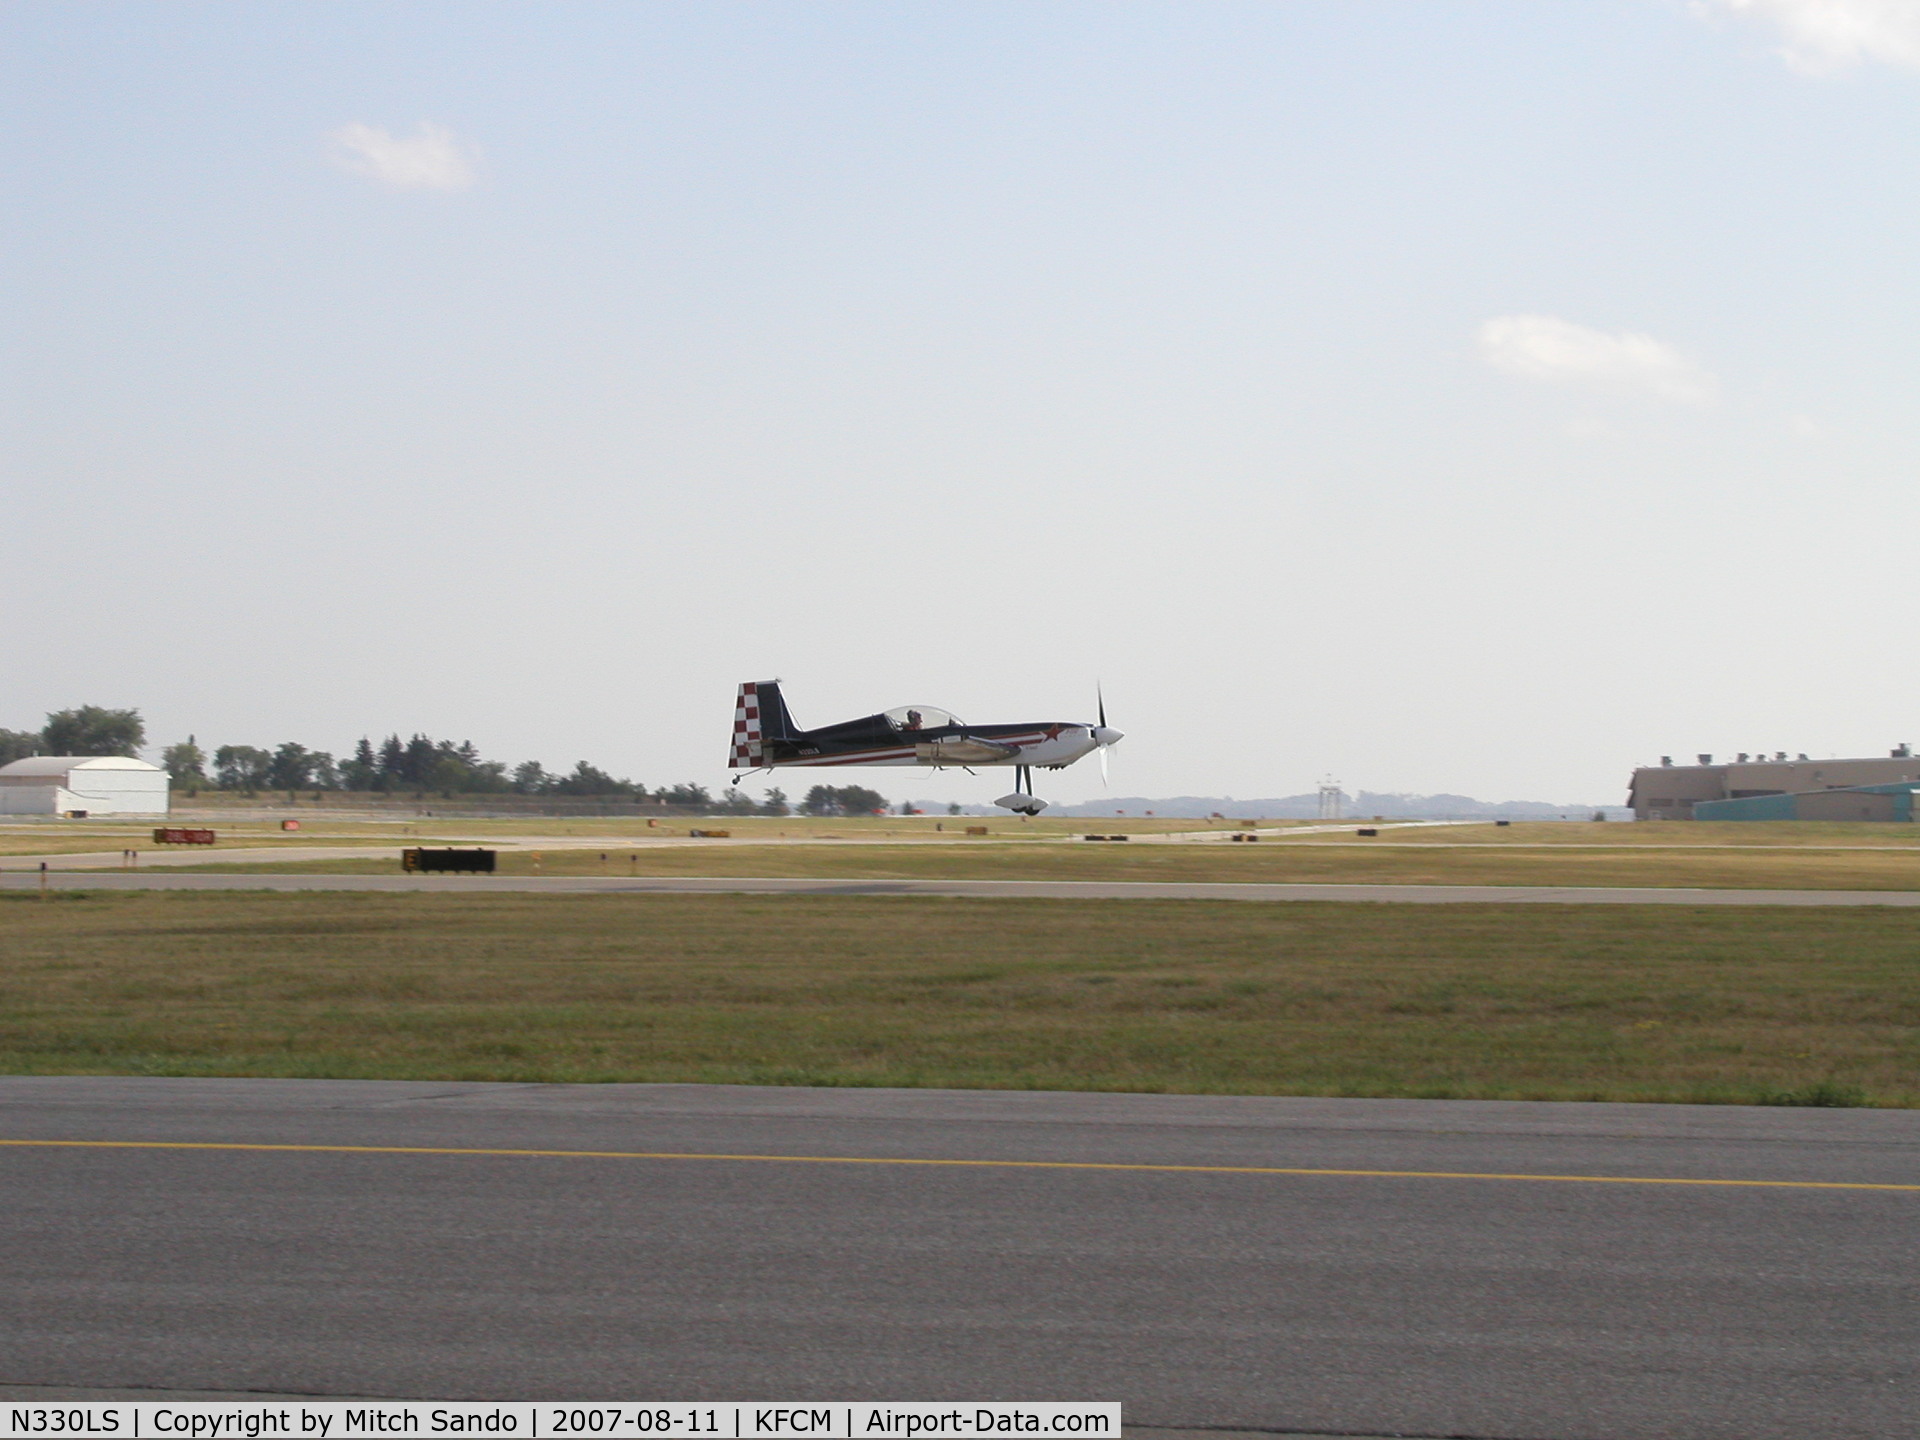 N330LS, 2000 Panzl S-330P C/N 001, Taking off Runway 28R.